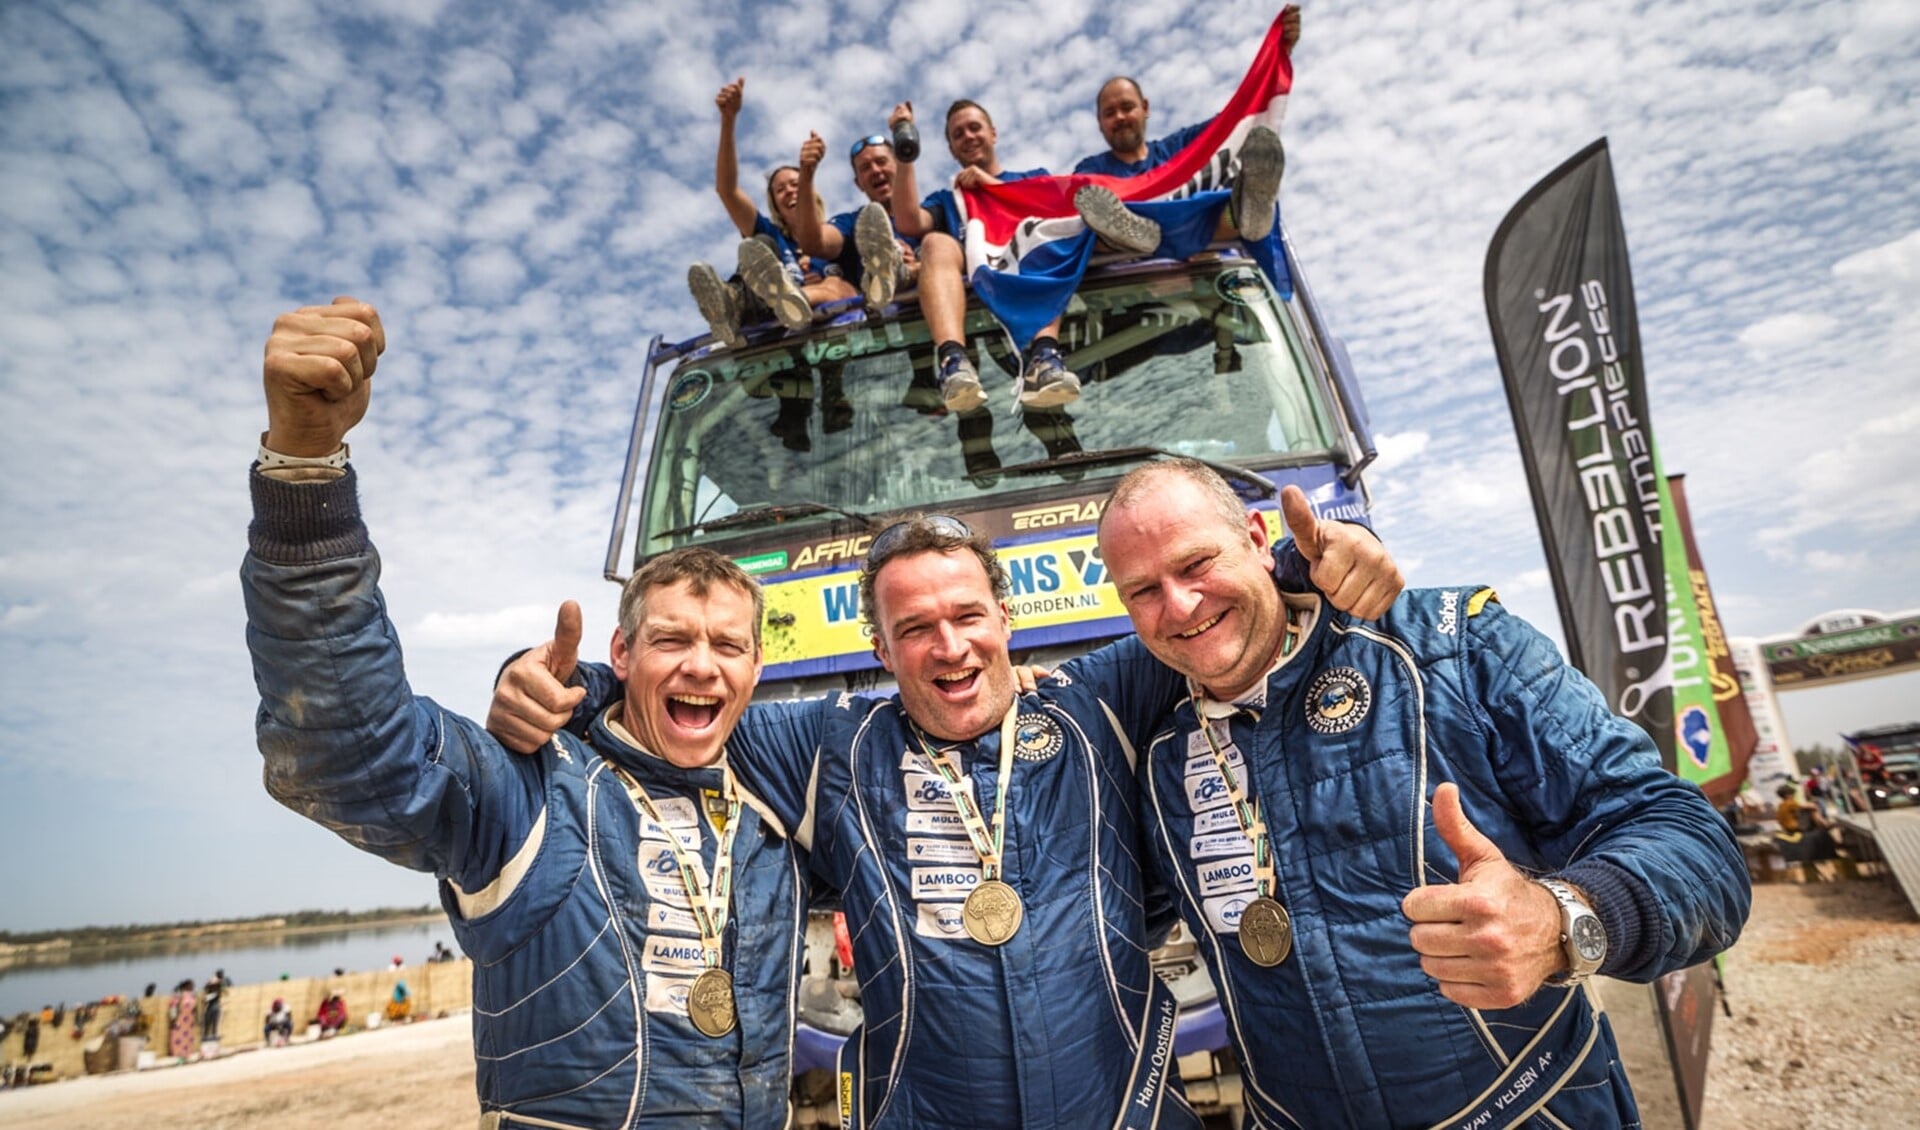 Het team van Van Velsen Rallysport viert de enige Nederlandse overwinning in de Afrika Eco Race (foto: Rallymaniacs/Tim Buitenhuis).